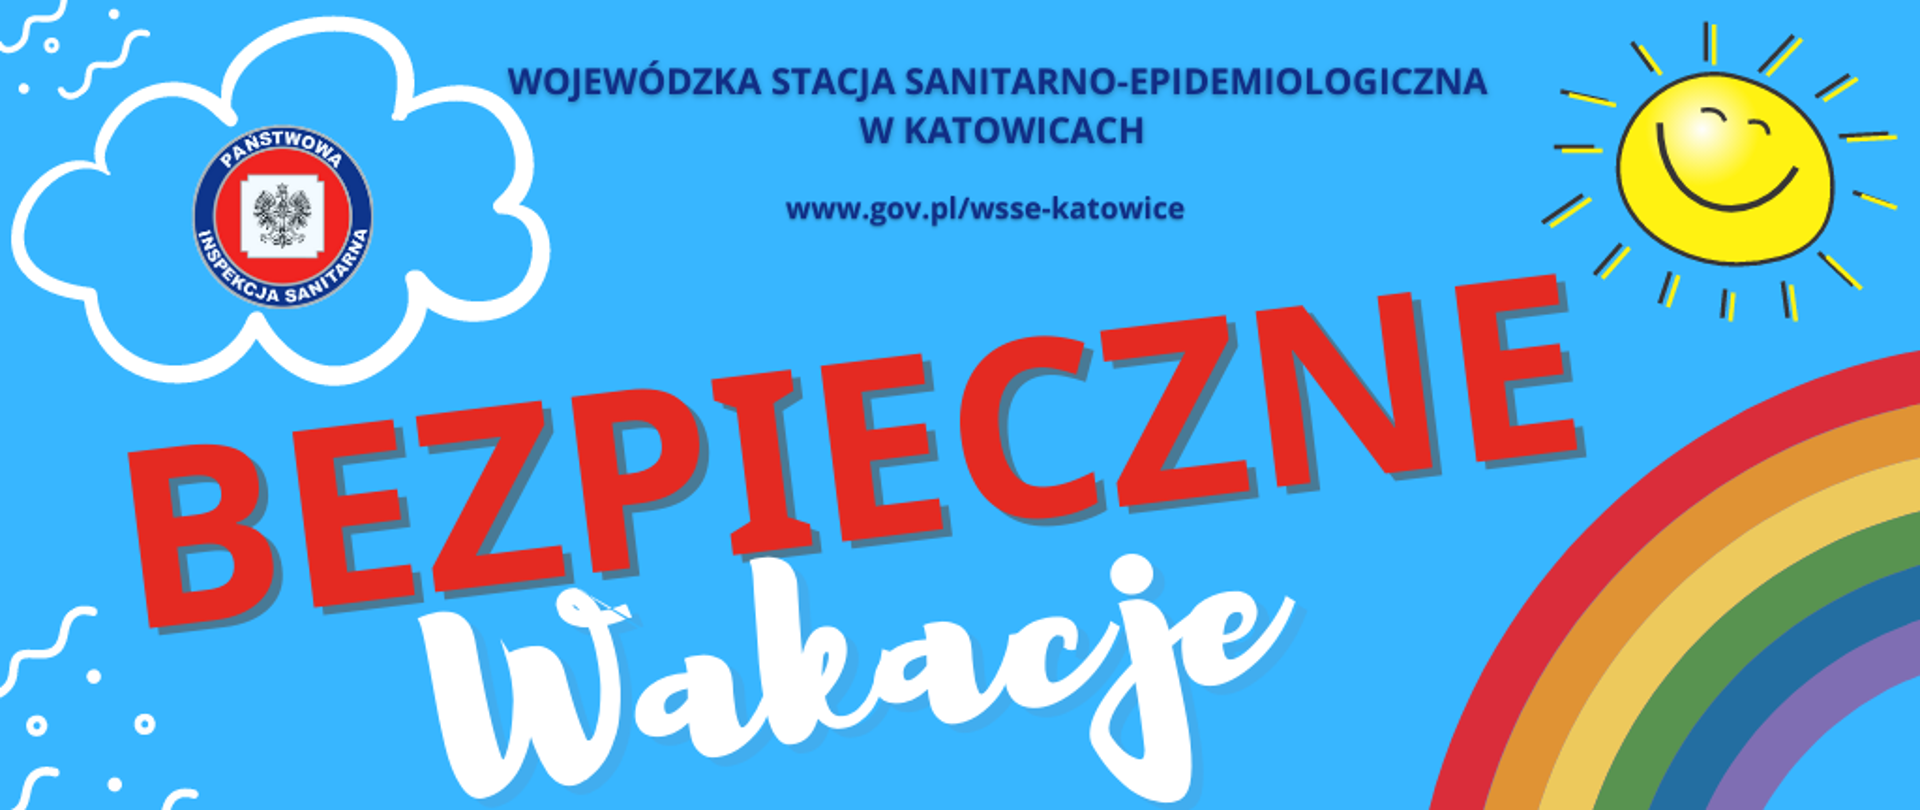 Baner akcji profilaktycznej pt. "Bezpieczne wakacje". Błękitne tło plakatu przedstawia w centralnej części kolorowy napis Bezpieczne wakacje, z lewej strony logo Państwowej Inspekcji Sanitarnej, u góry znajduje się napis WOJEWÓDZKA STACJA SANITARNO-EPIDEMIOLOGICZNA W KATOWICACH oraz adres strony internetowej www.gov.pl/wsse-katowice, po prawej stronie znajduje się u góry słońce poniżej tęcza.